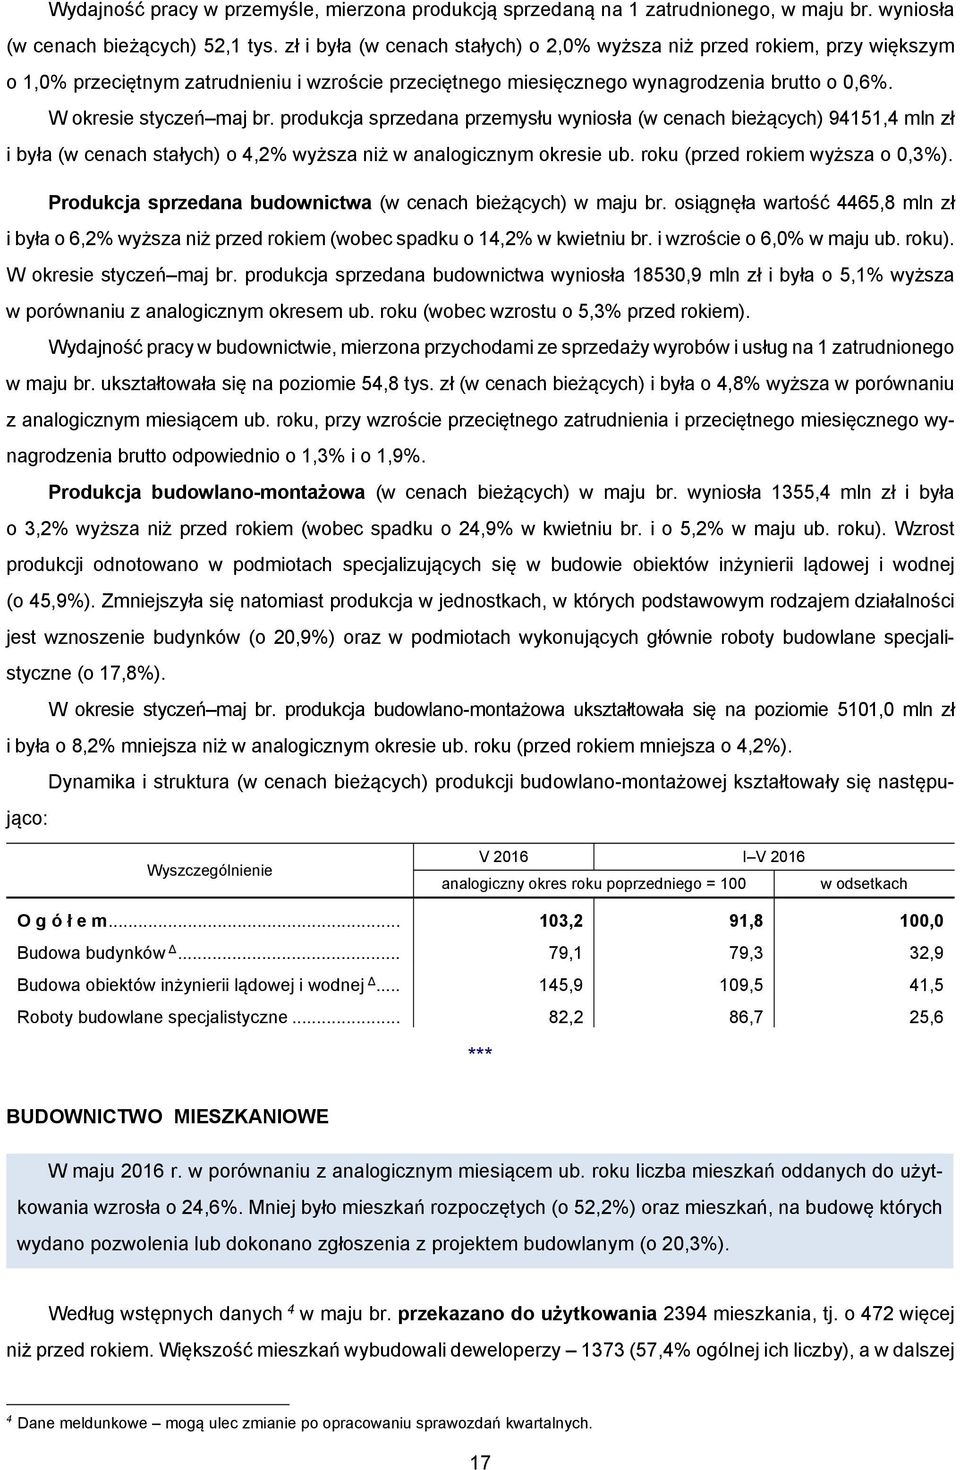 produkcja sprzedana przemysłu wyniosła (w cenach bieżących) 94151,4 mln zł i była (w cenach stałych) o 4,2% wyższa niż w analogicznym okresie ub. roku (przed rokiem wyższa o 0,3%).